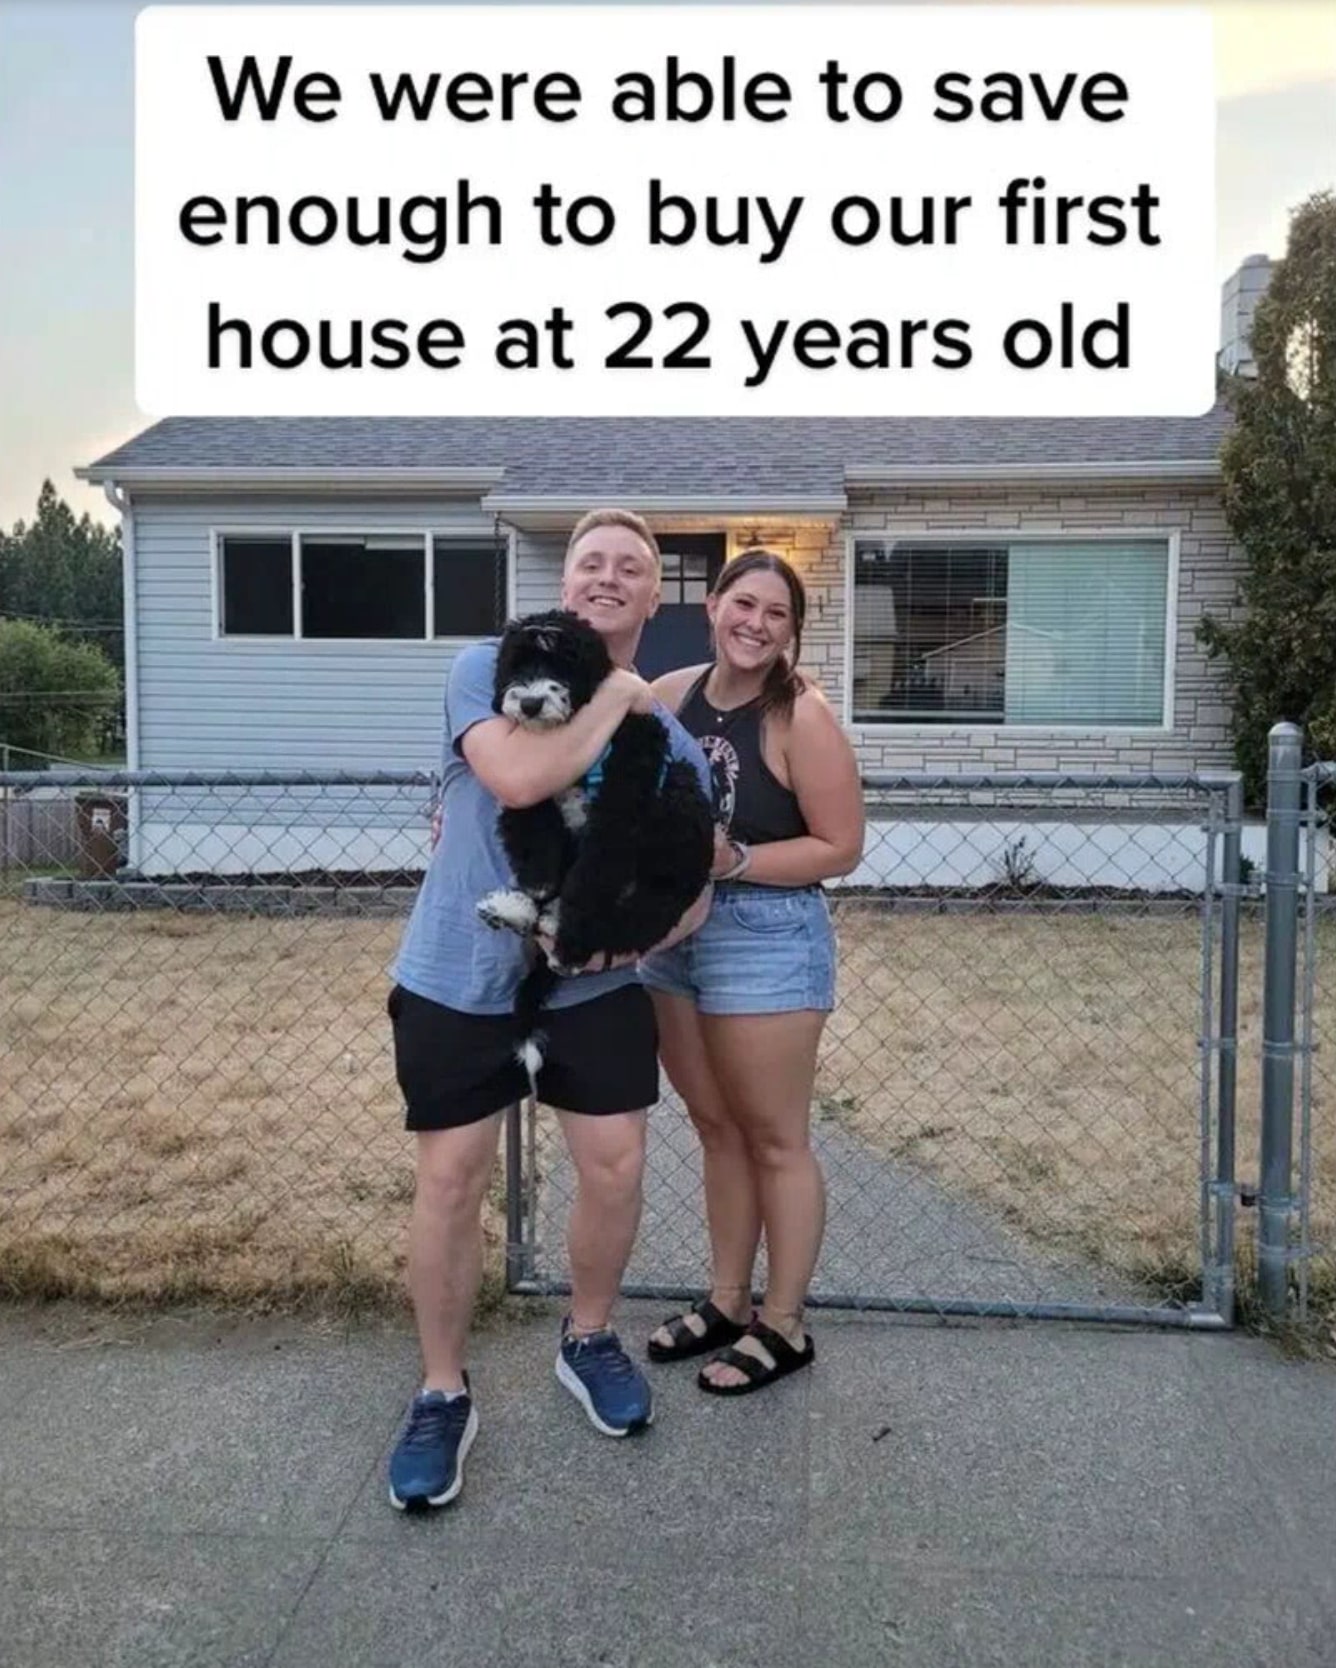 Sie haben in zwei Jahren 39.000 Pfund gespart, um ihr erstes Haus zu kaufen